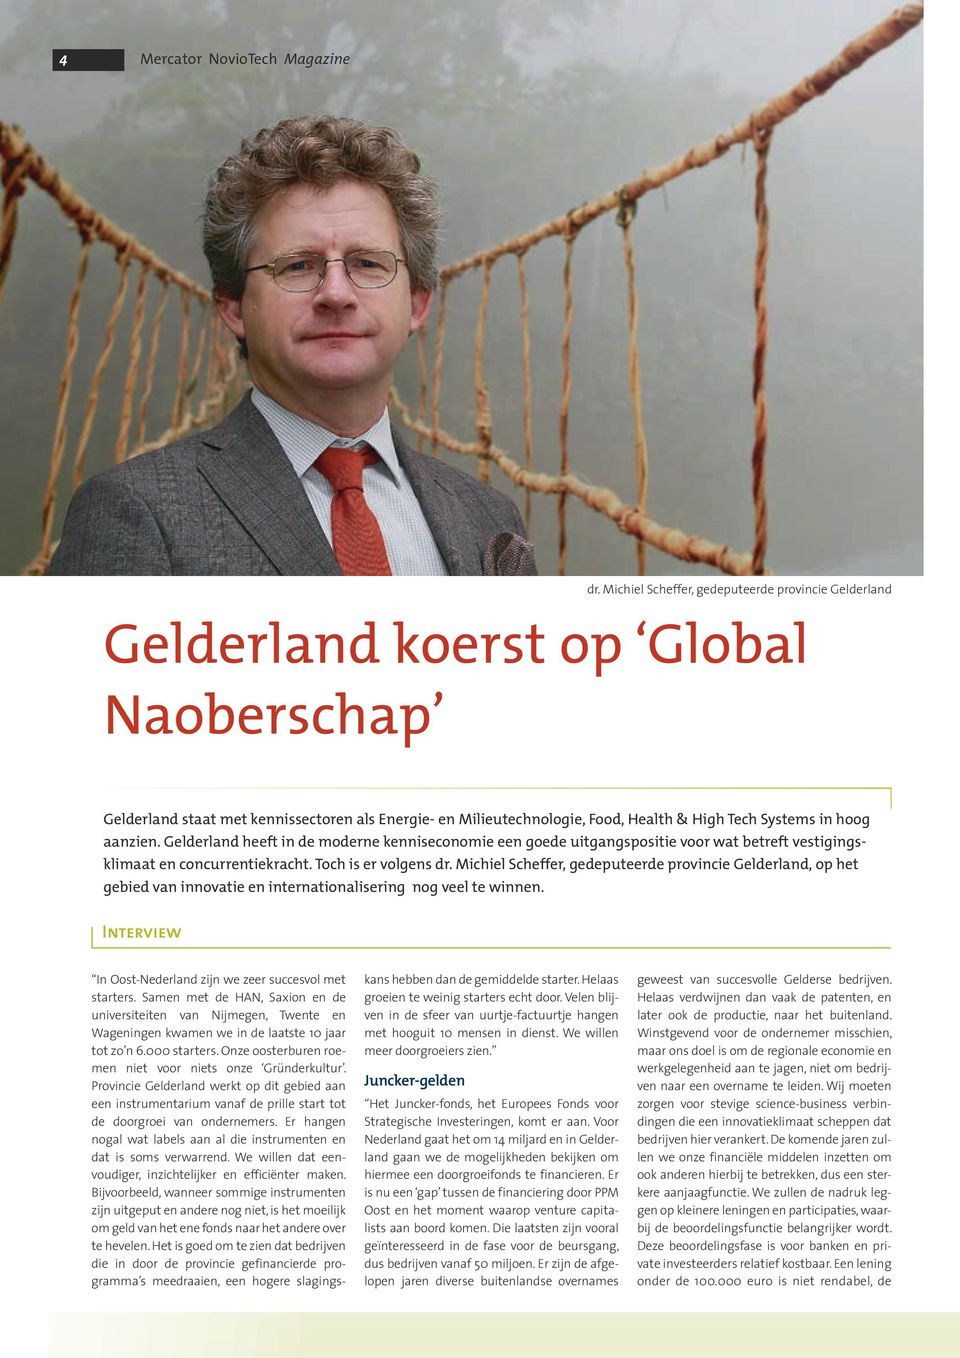 Gelderland heeft in de moderne kenniseconomie een goede uitgangspositie voor wat betreft vestigingsklimaat en concurrentiekracht. Toch is er volgens dr.